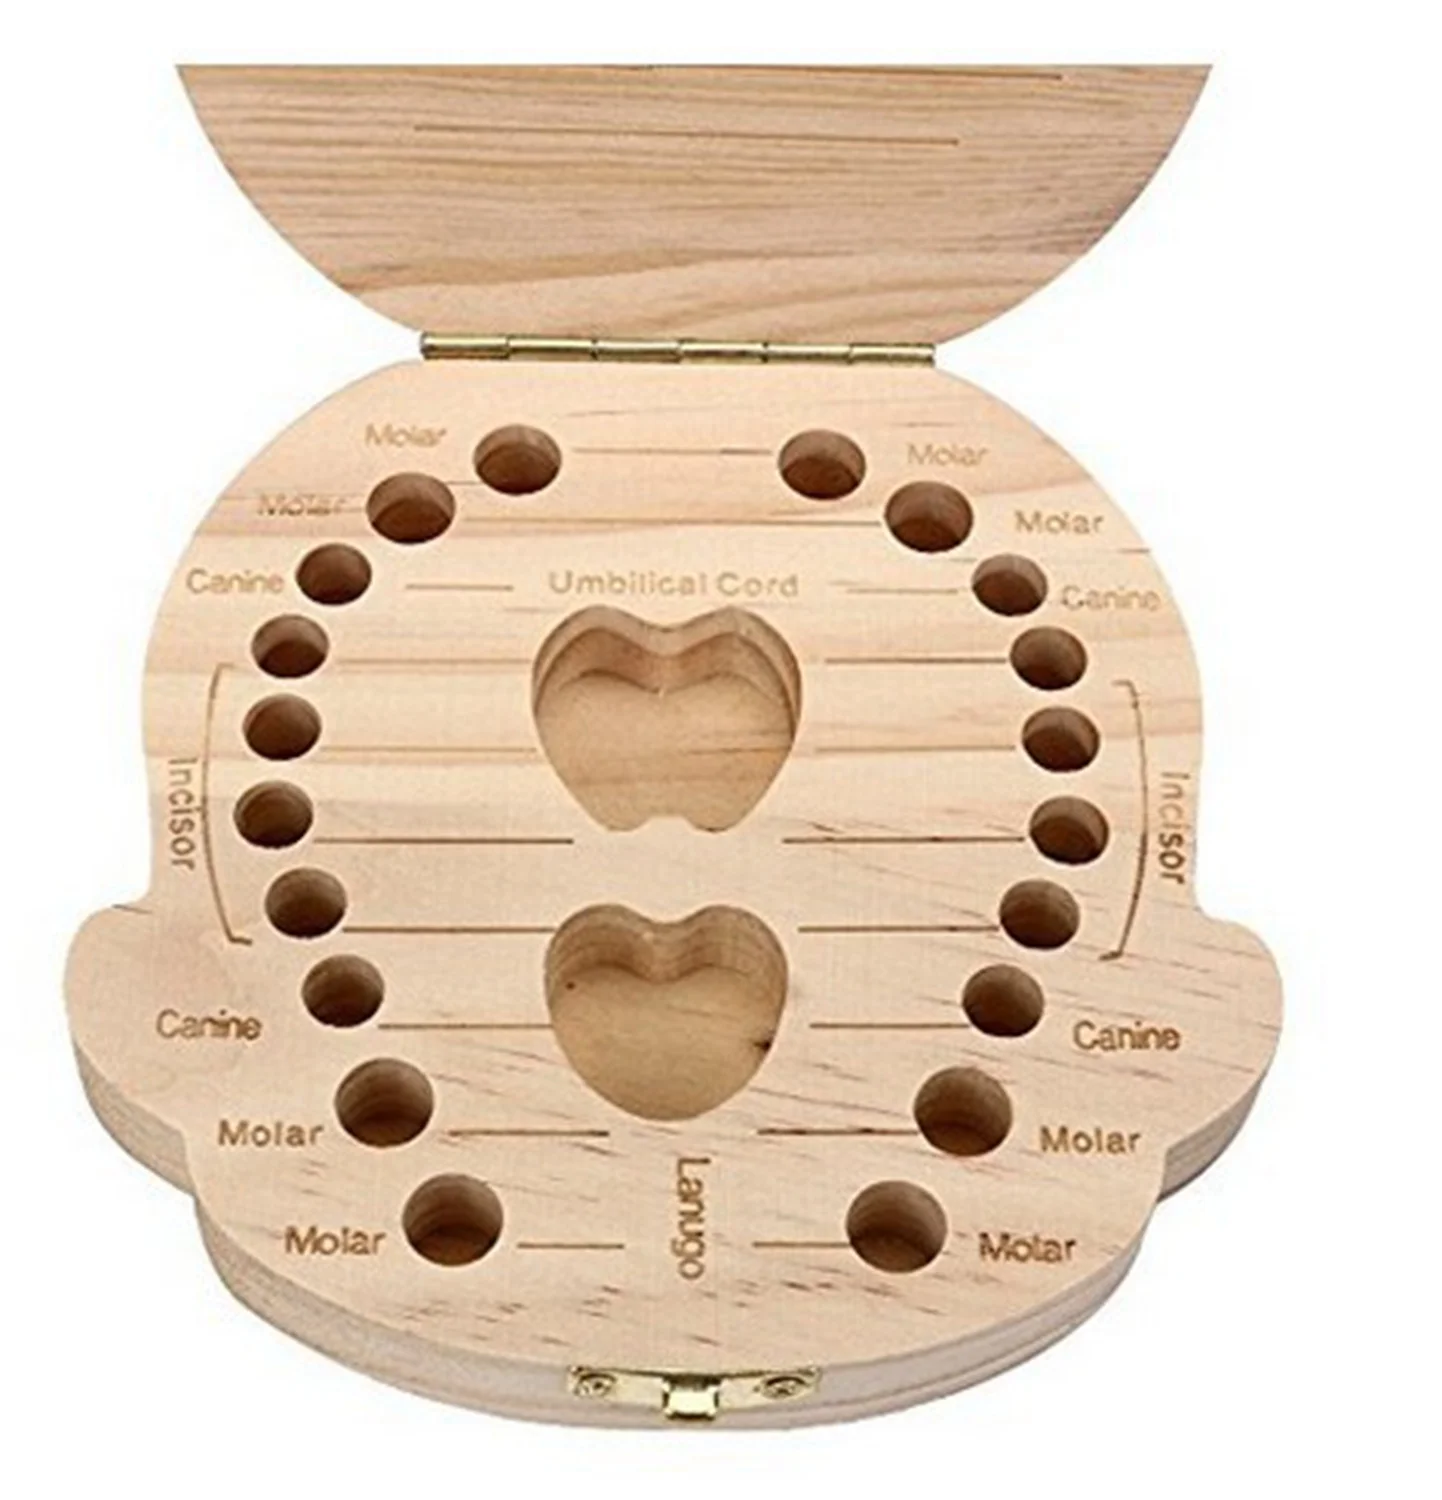 Новый детский зуб Коробка органайзер для ребенка сохранить зубы молока деревянный ящик для хранения